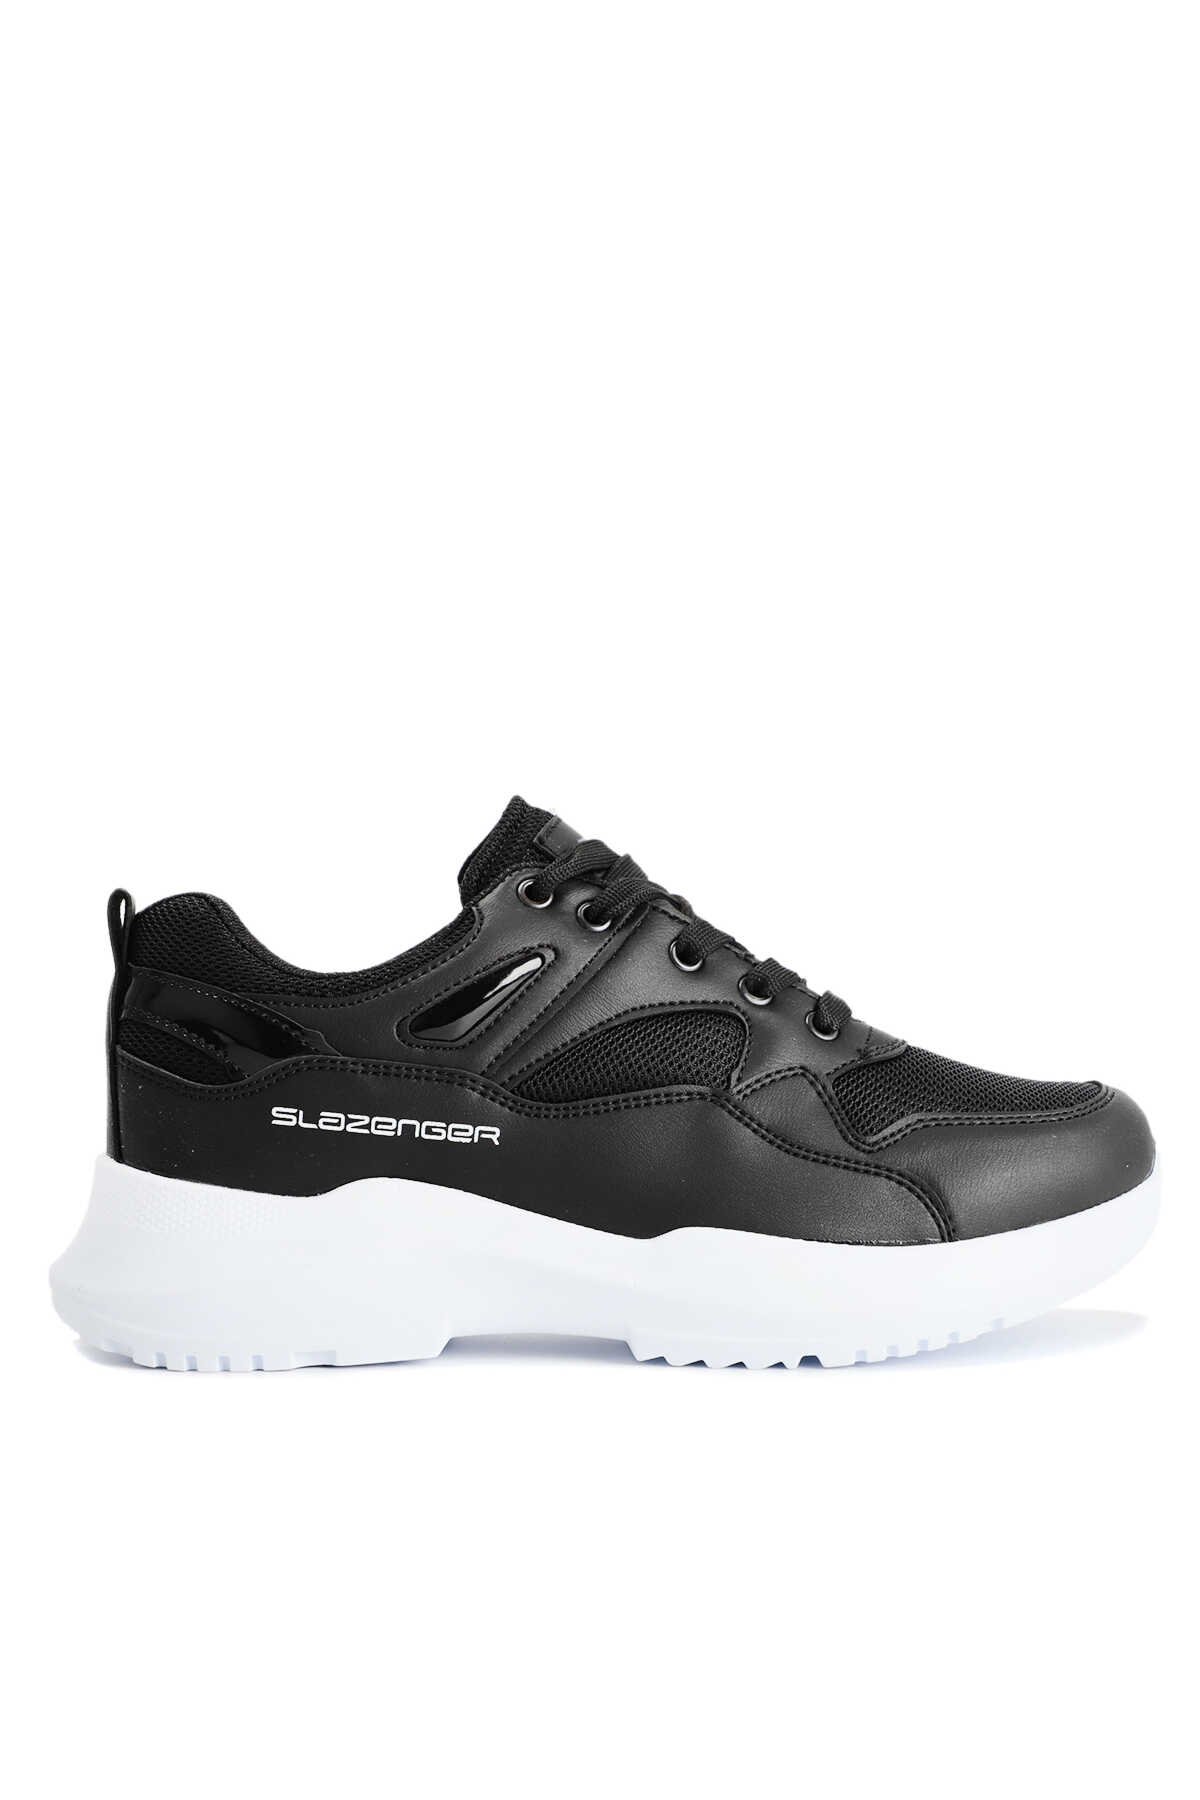 Slazenger - Slazenger KARPOS I Sneaker Kadın Ayakkabı Siyah / Beyaz